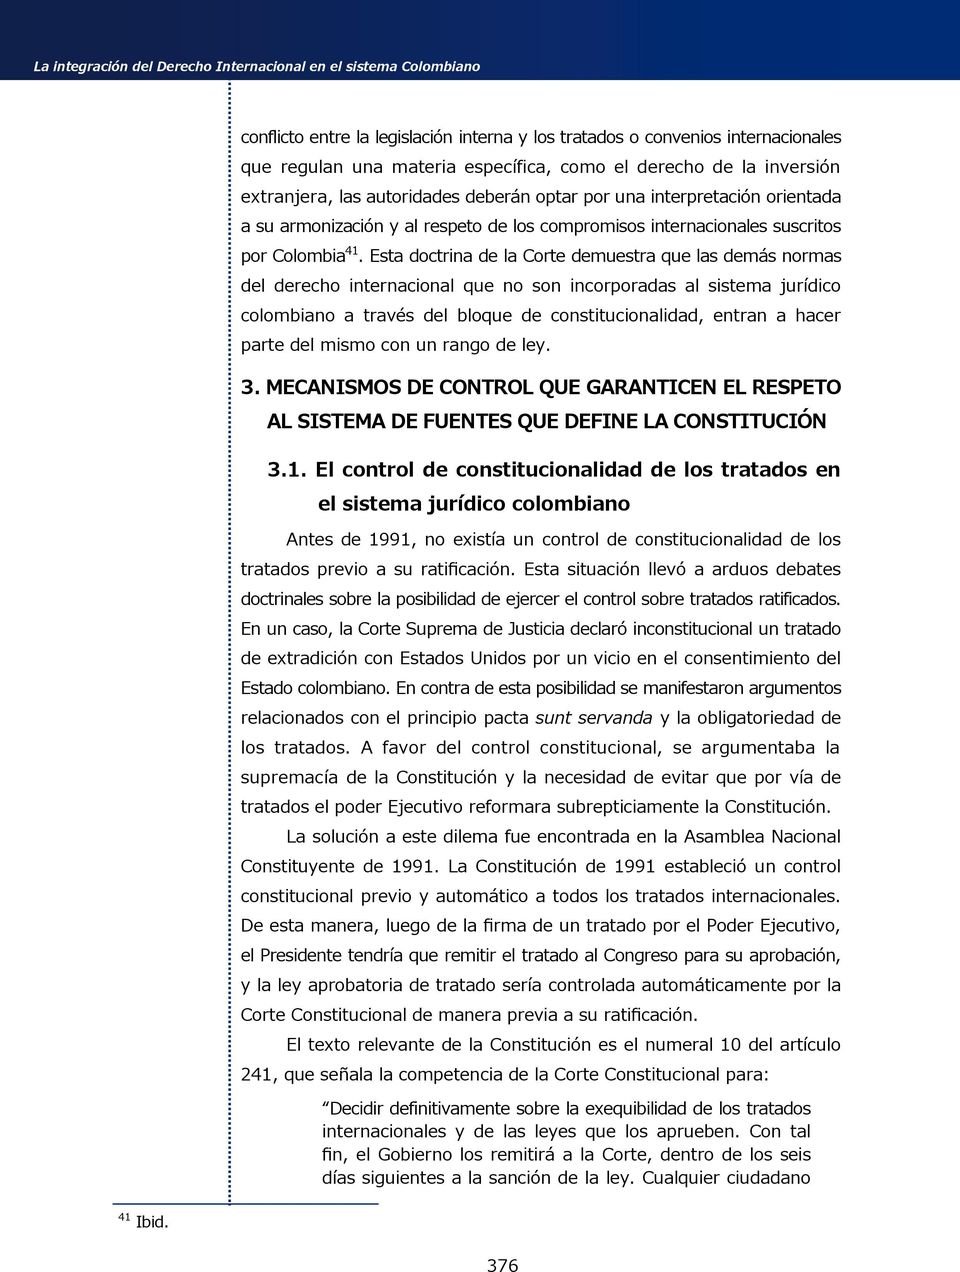 Esta doctrina de la Corte demuestra que las demás normas del derecho internacional que no son incorporadas al sistema jurídico colombiano a través del bloque de constitucionalidad, entran a hacer